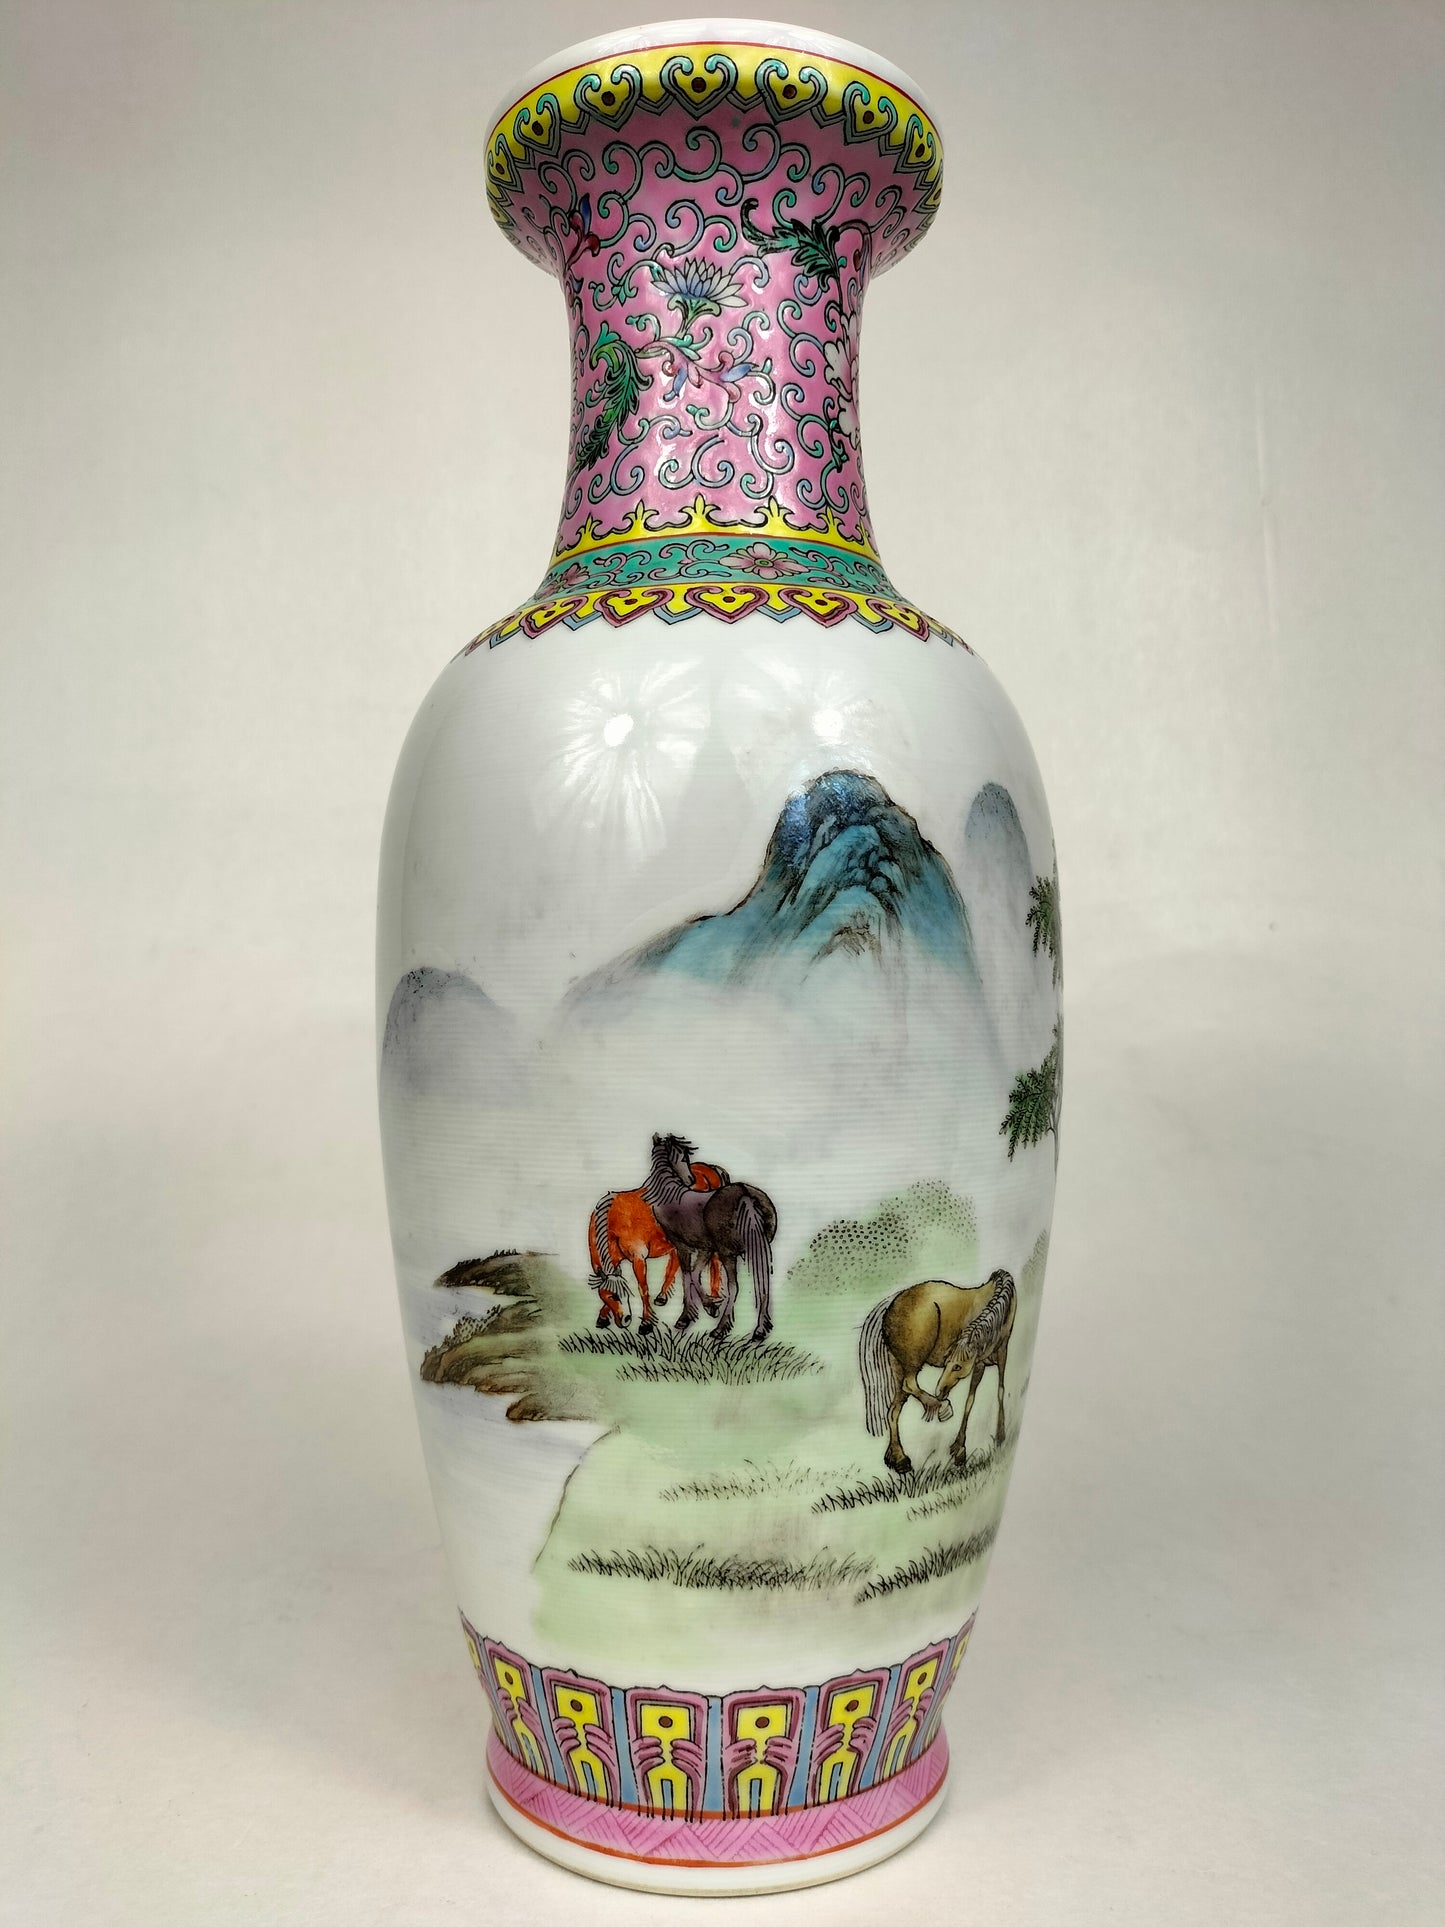 Bình hoa hồng gia đình Trung Quốc được trang trí hình ngựa trong phong cảnh // Jingdezhen - thế kỷ 20